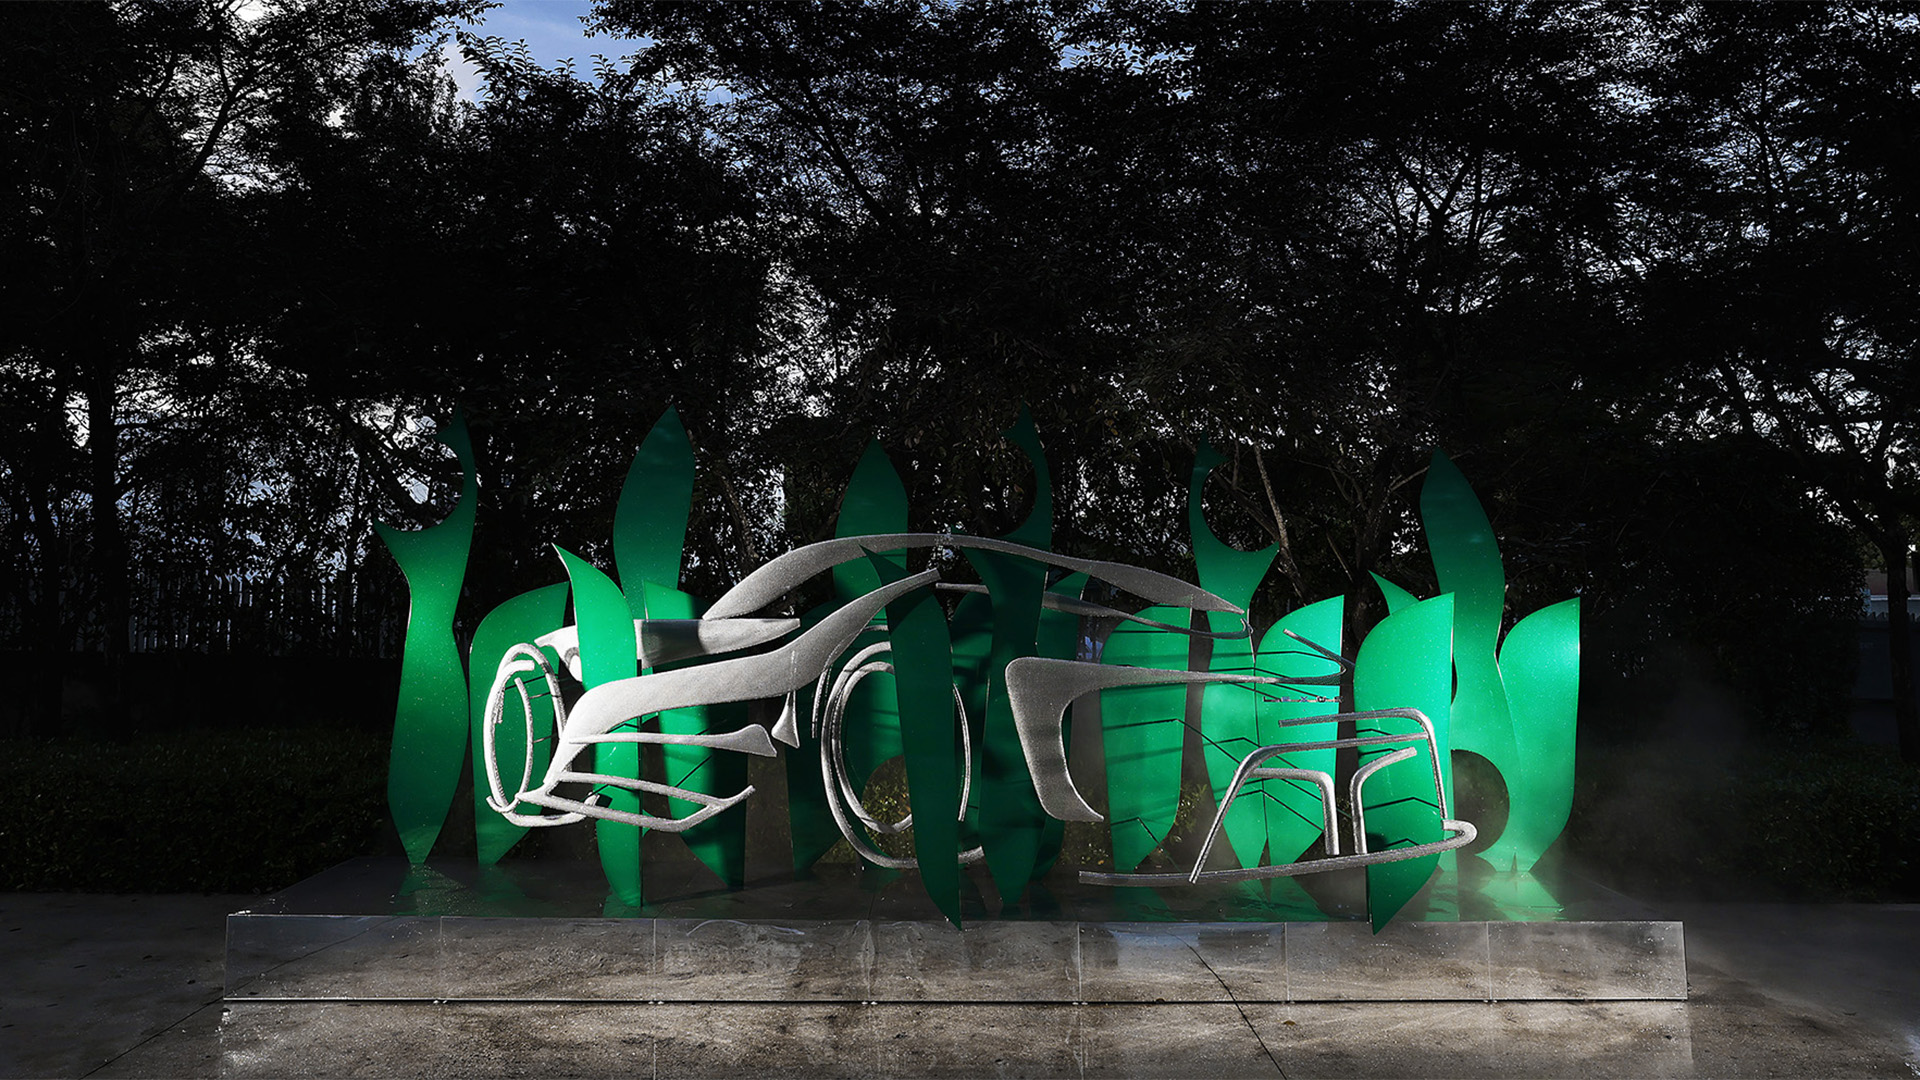 La instalación artística de Suchi Reddy se exhibió durante toda la Art Week Miami 2022, dentro del ICA Miami